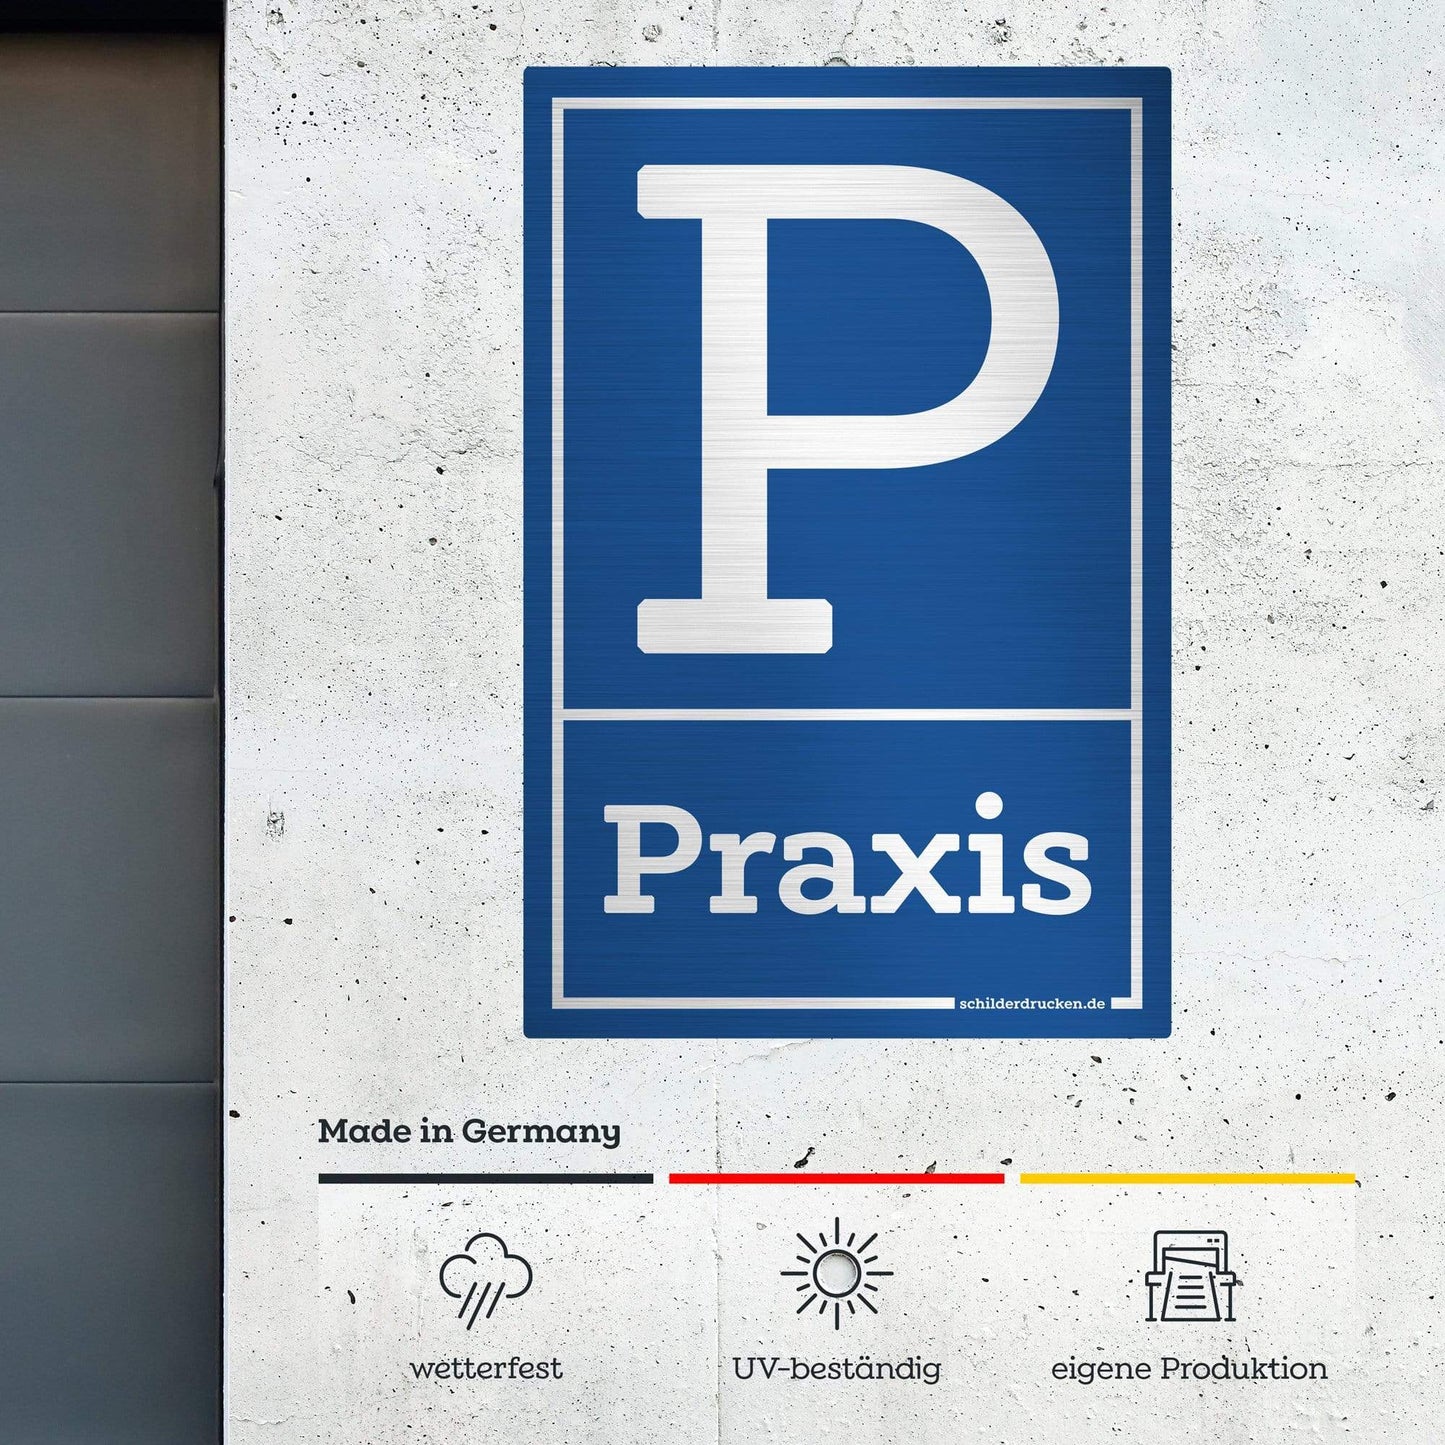 Praxis Parkplatz 10 x 15 cm / silber gebürstet / Alu-Dibond online drucken lassen bei schilderdrucken.de